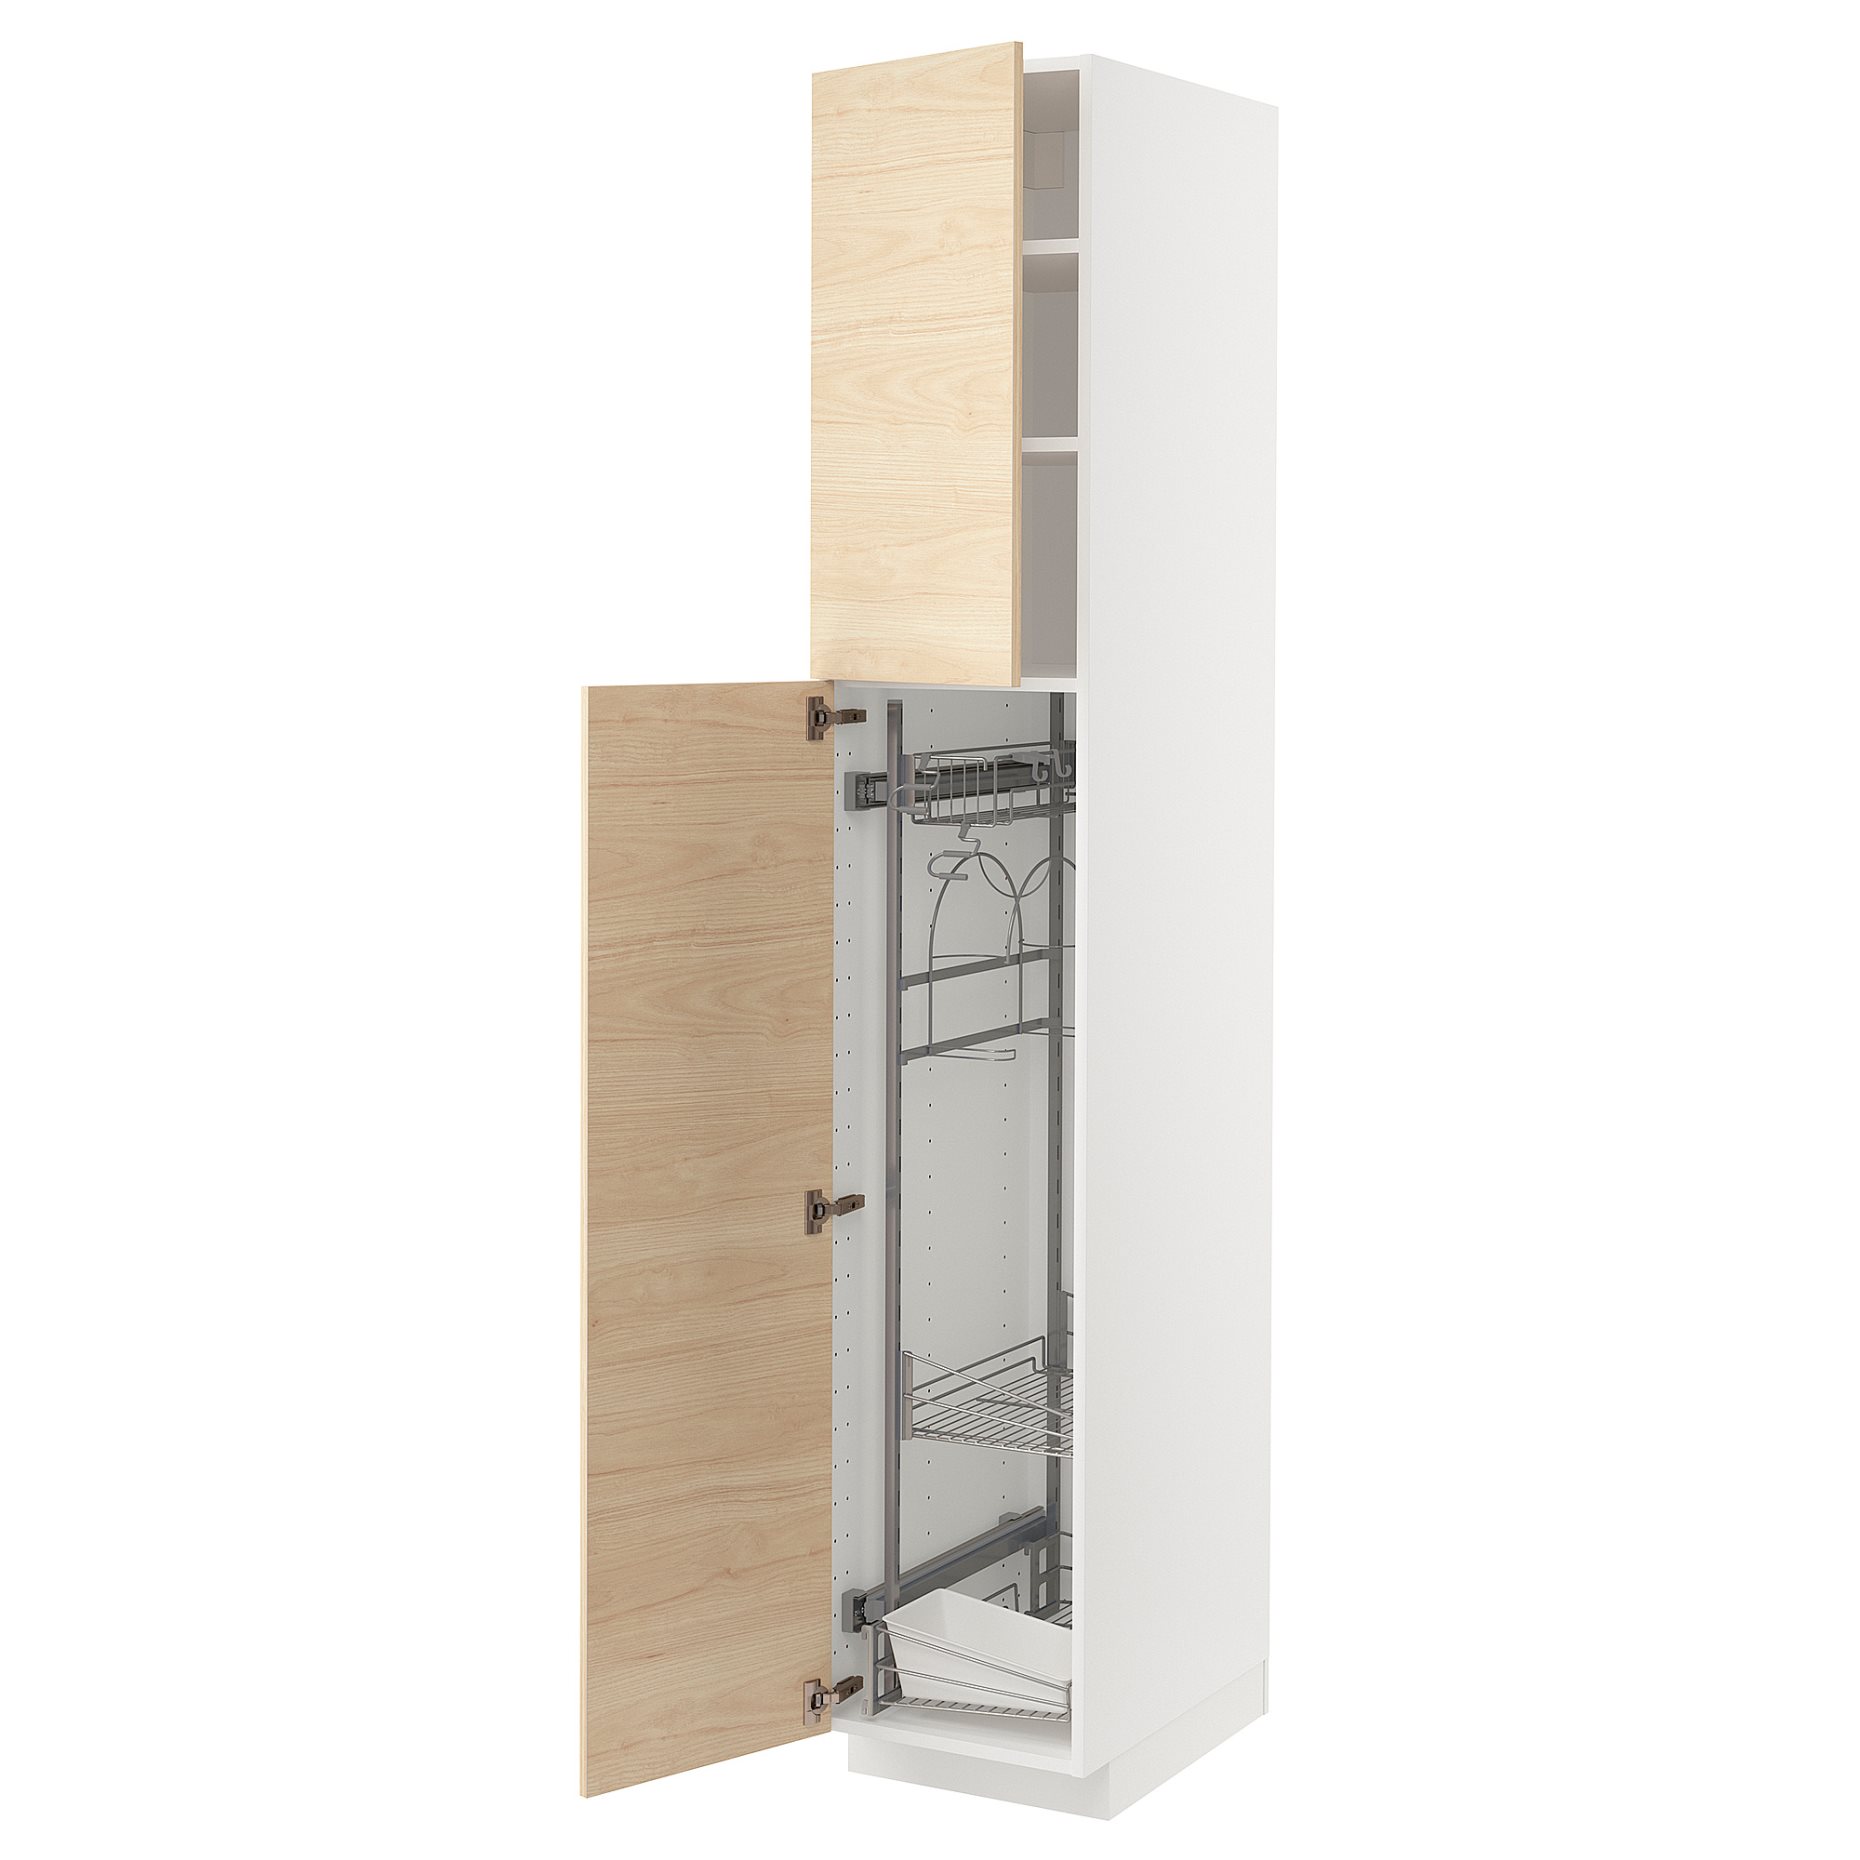 METOD, ψηλό ντουλάπι με εσωτερικά εξάρτηματα για τα είδη καθαρισμού, 40x60x220 cm, 294.604.02